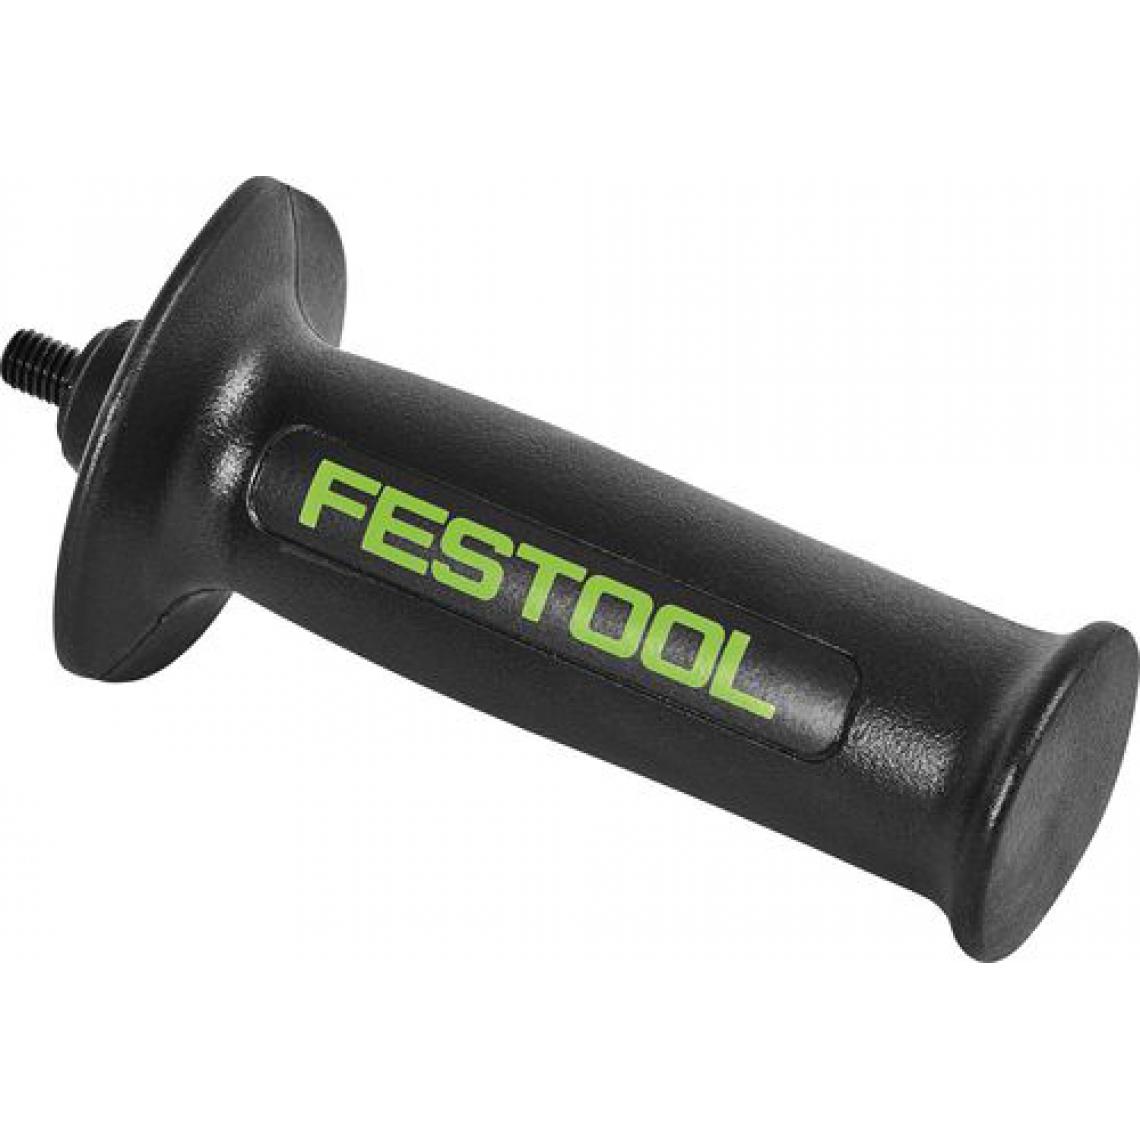 Festool - Poignée supplémentaire FESTOOL AH-M14 VIBRASTOP - 769621 - Accessoires sciage, tronçonnage